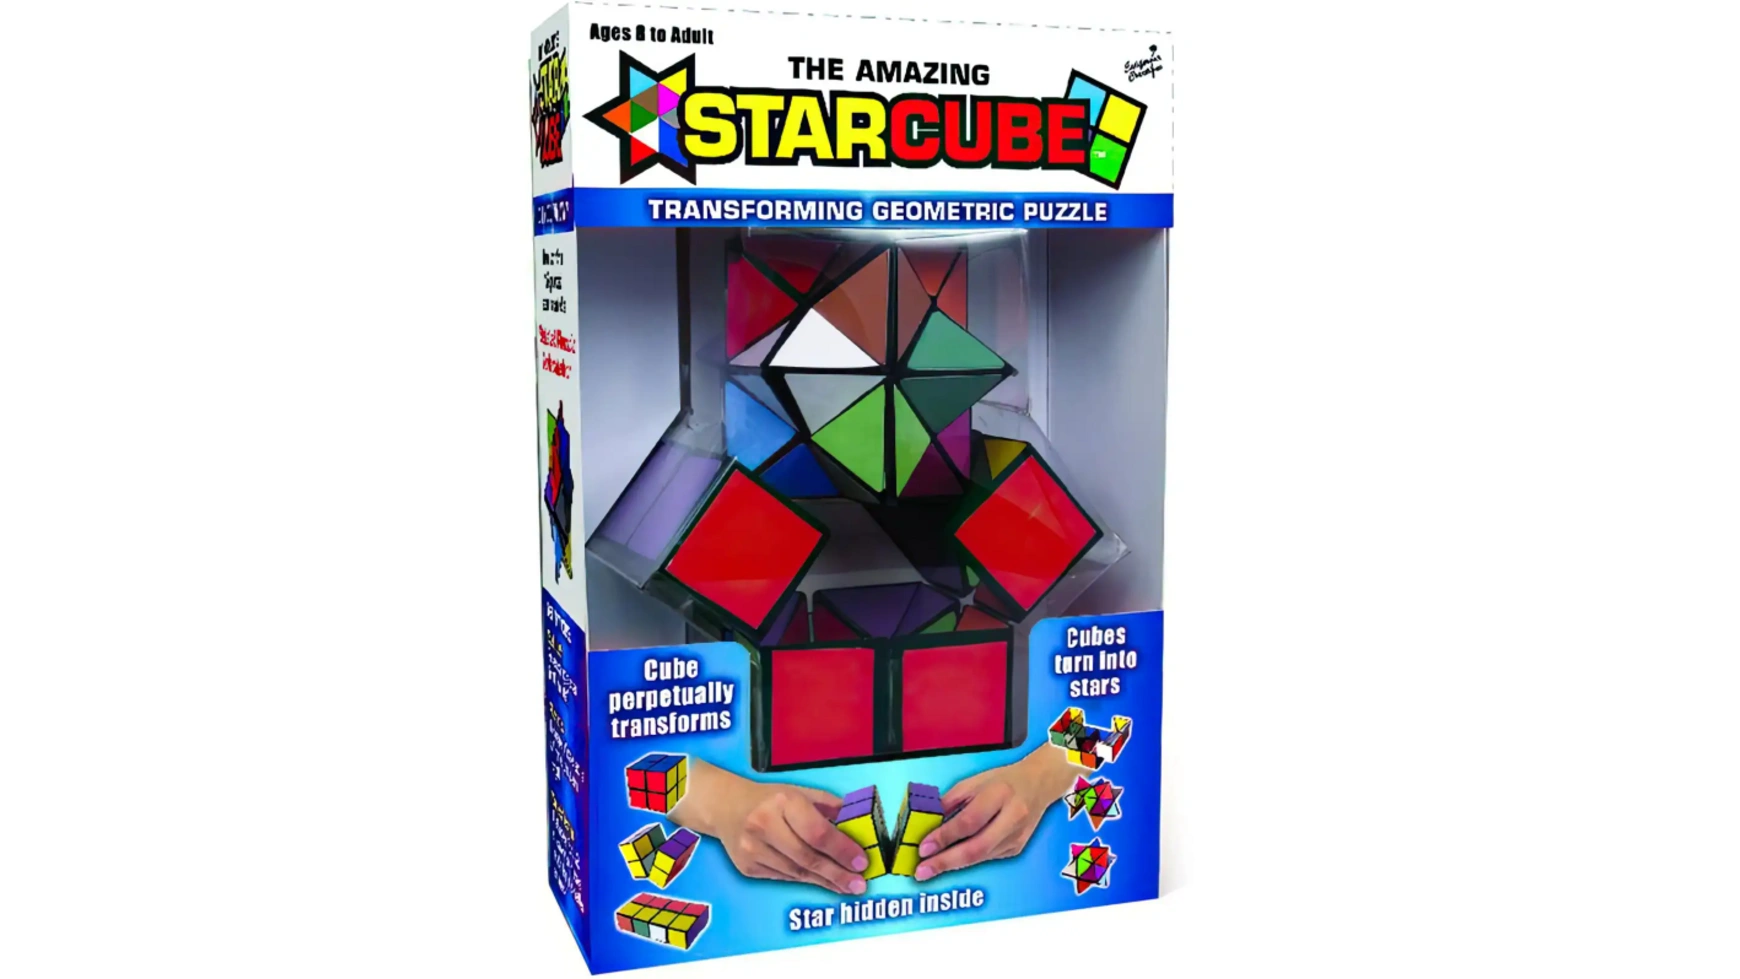 Звездный волшебный куб Elliot StarCube игра на ловкость и терпение, 5,5 х 5,5 см, красочный магнитный магический куб qiyi xman tornado v3 pionee 3x3x3 профессиональный 3 скоростной пазл 3 × 3 игрушка оригинальный венгерский куб кубик рубика